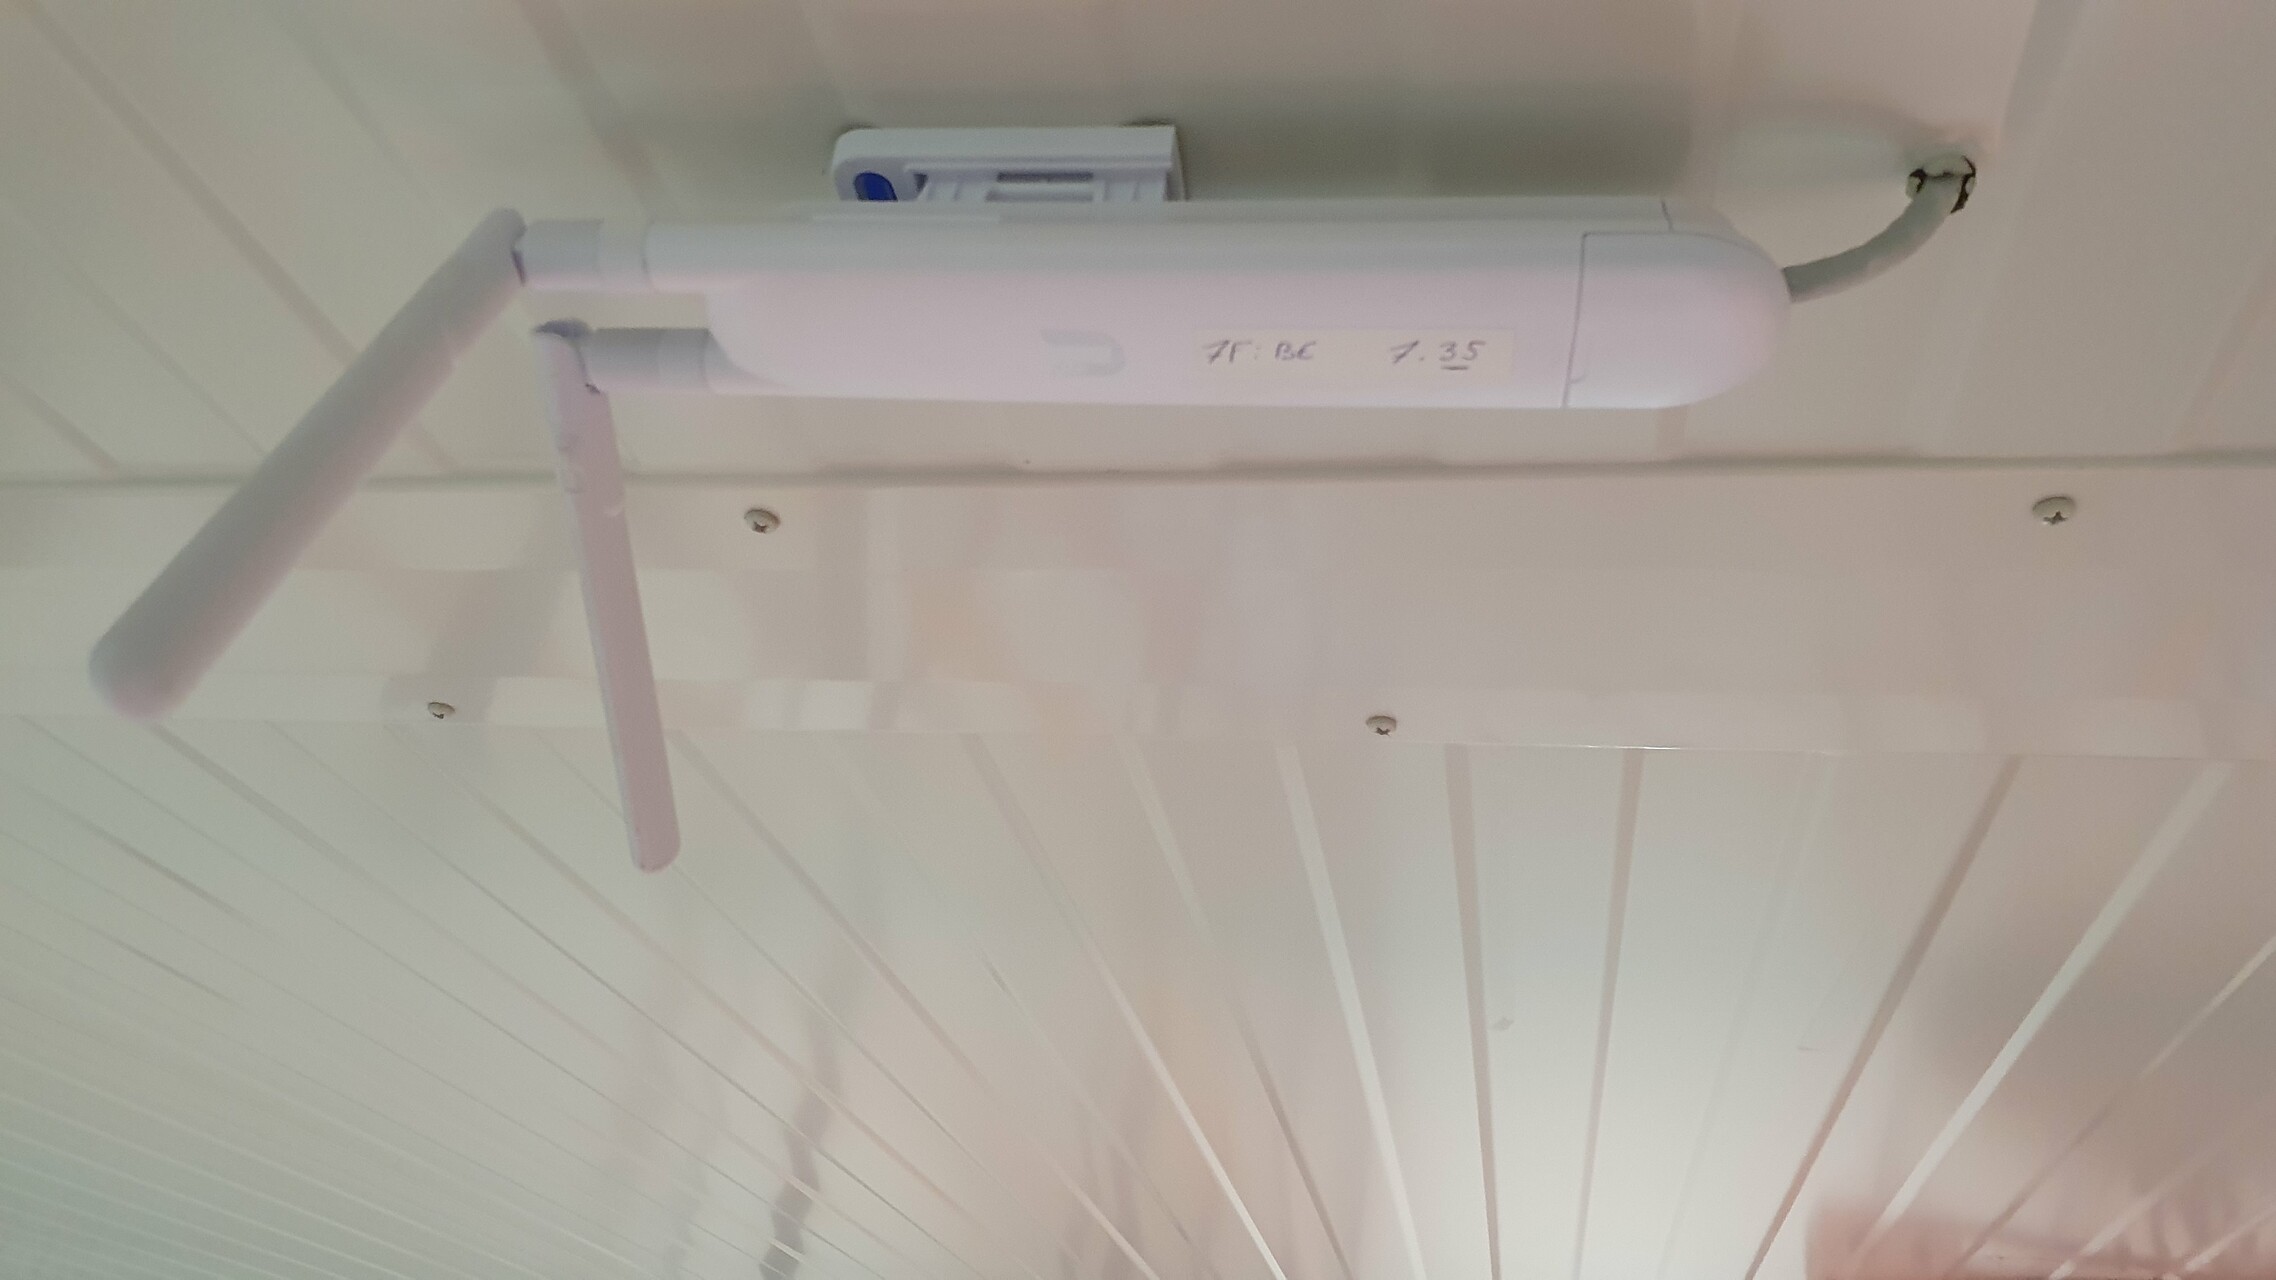 Point d'accès WiFi dans un frigo industriel